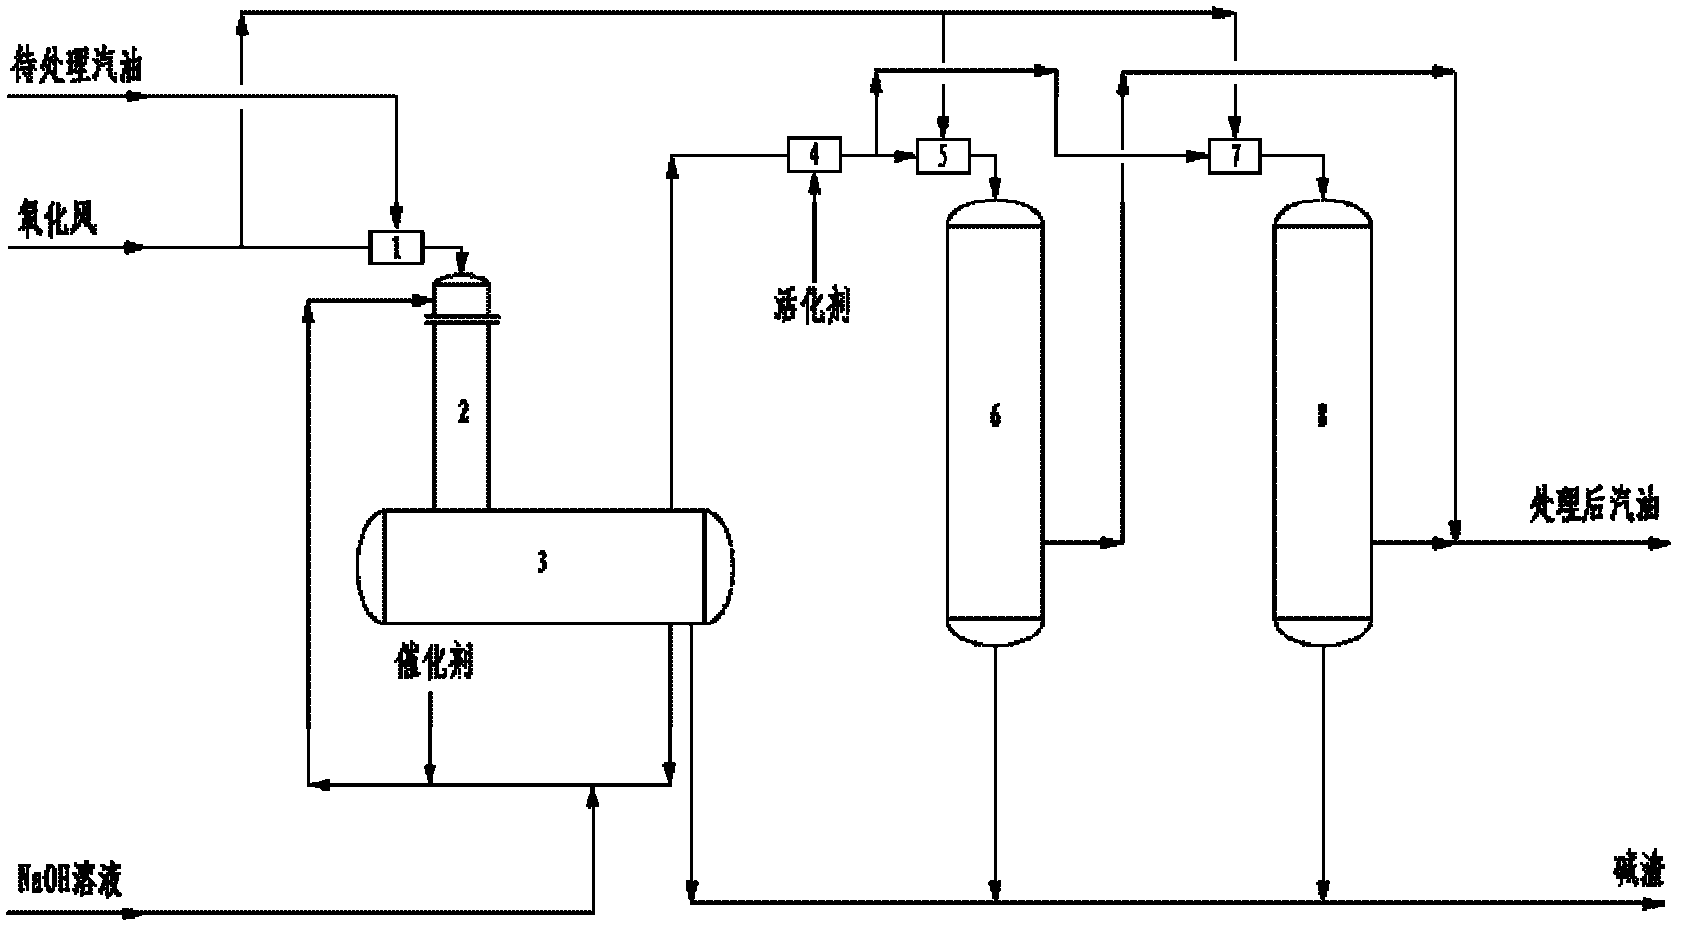 Gasoline desulfuration and deodorization process